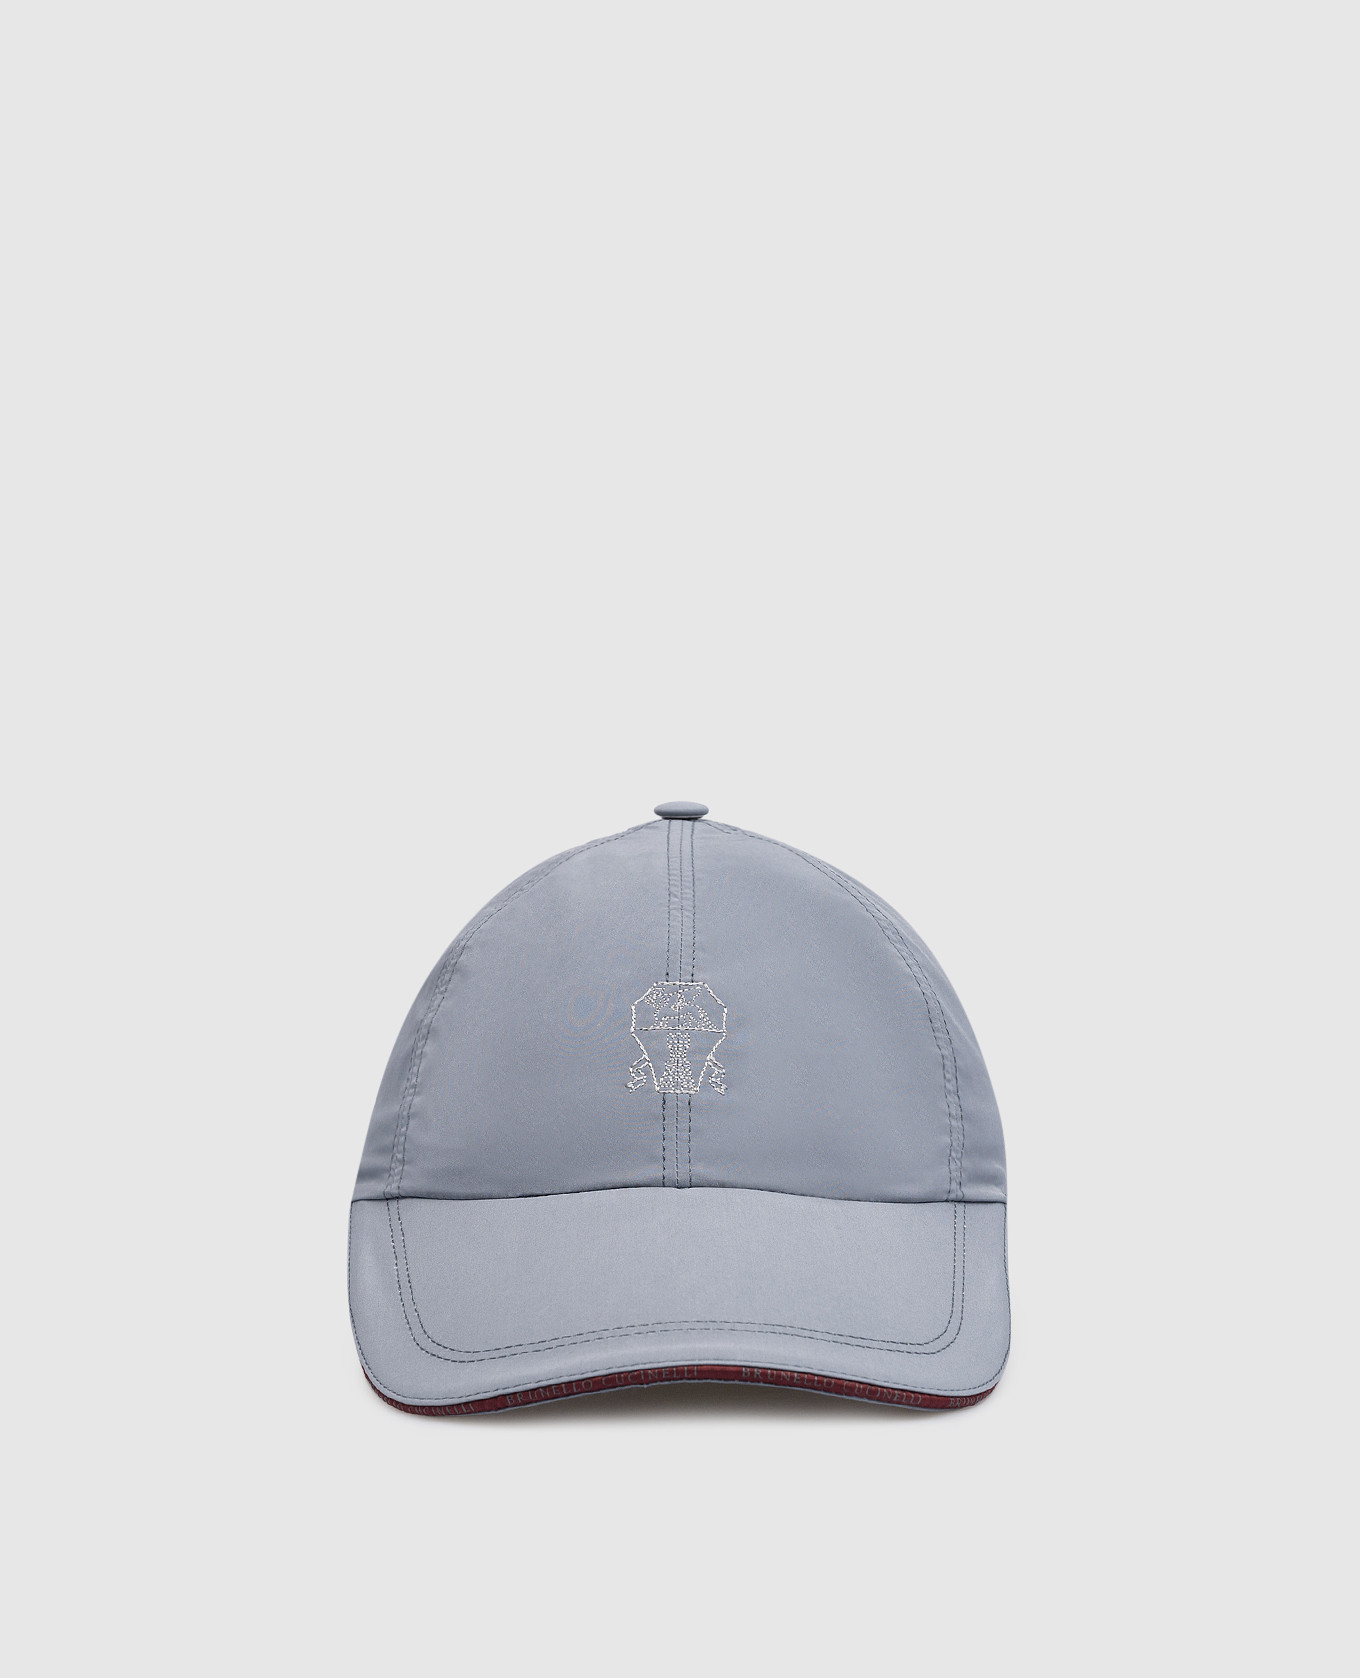 Szara czapka z wyszytym logo